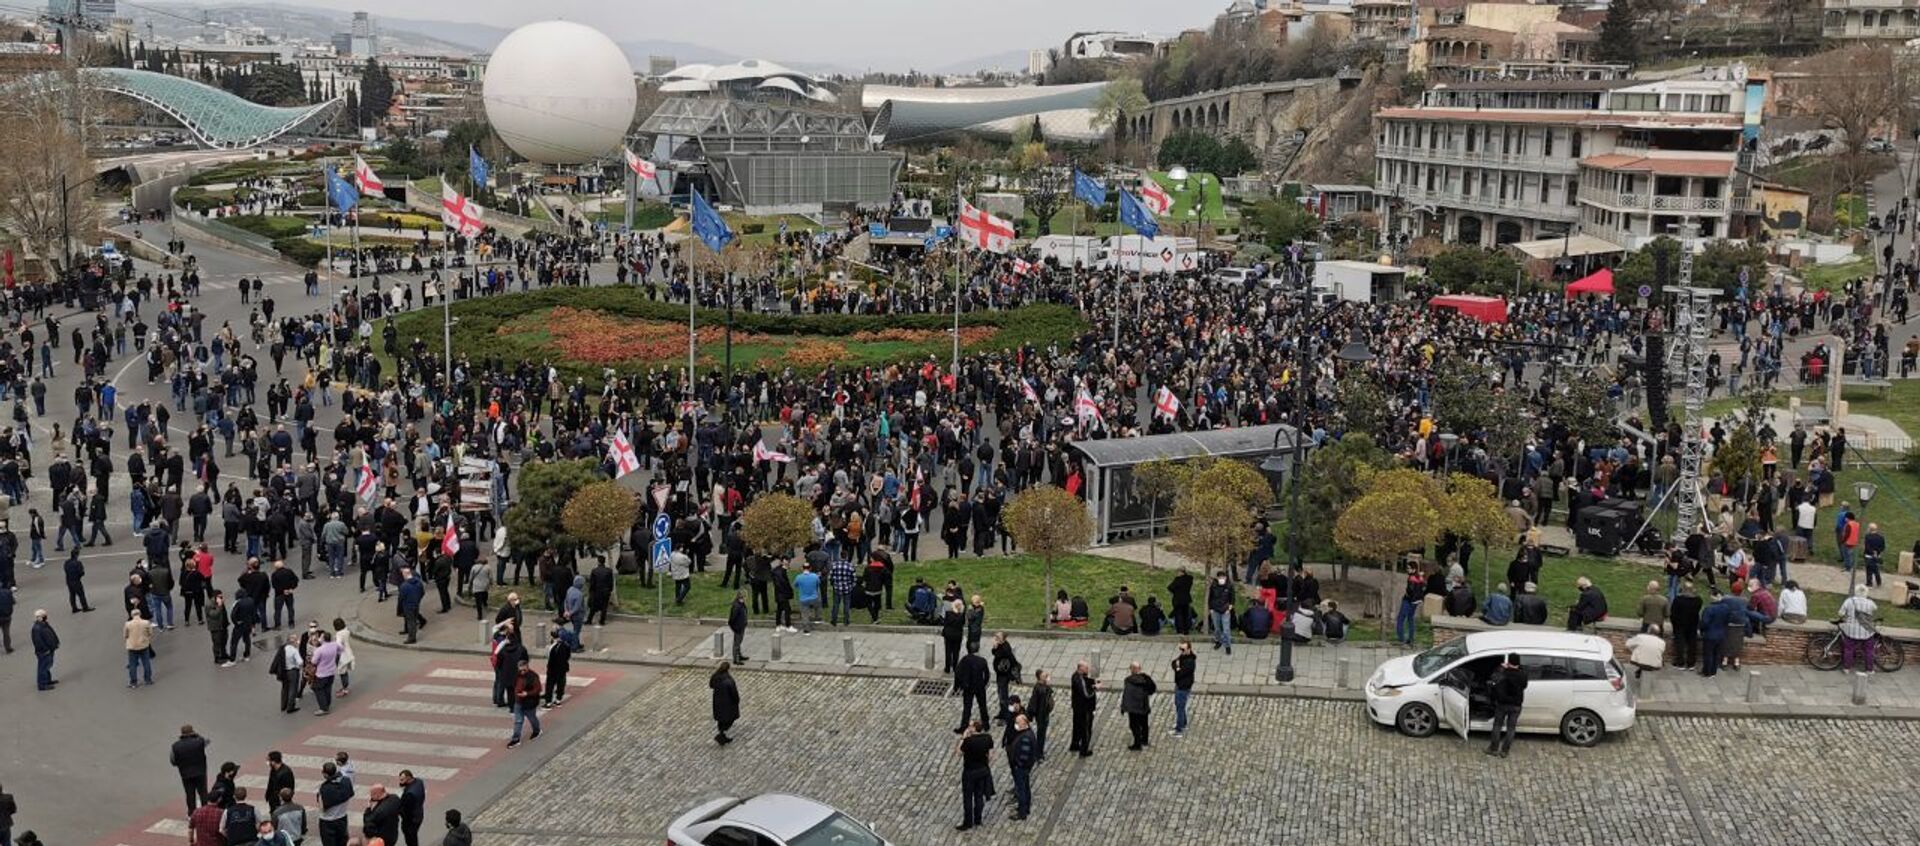 Акция протеста, организованная популярным грузинским певцом Уцноби (Гией Гачечиладзе) 9 апреля 2021 года - Sputnik Грузия, 1920, 09.04.2021